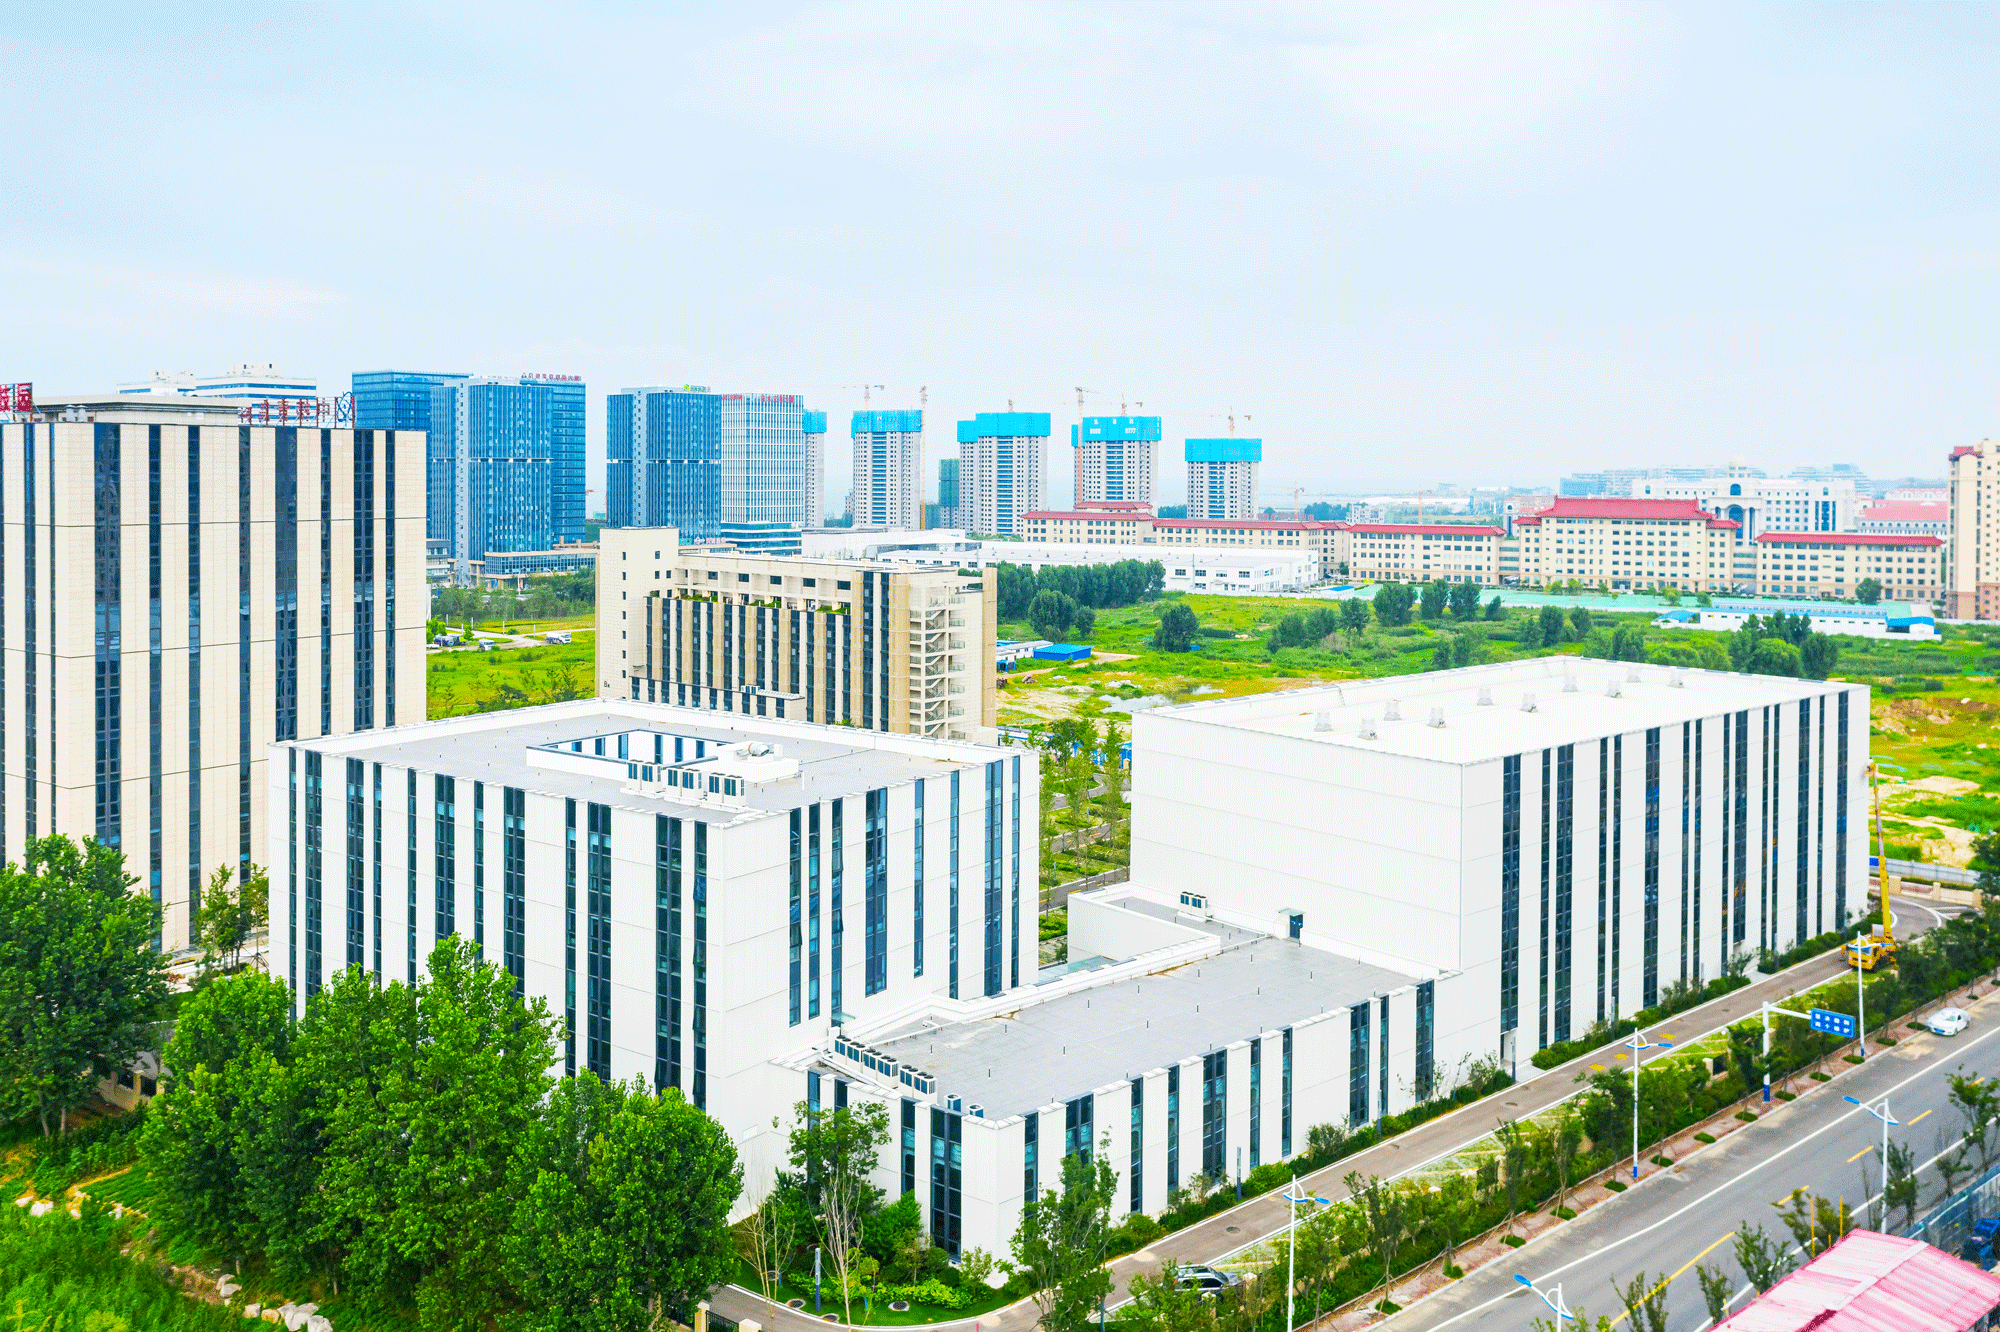 Parque tecnológico de qingdao, ¡Crea un parque moderno con tecnología prefabricada!(图3)